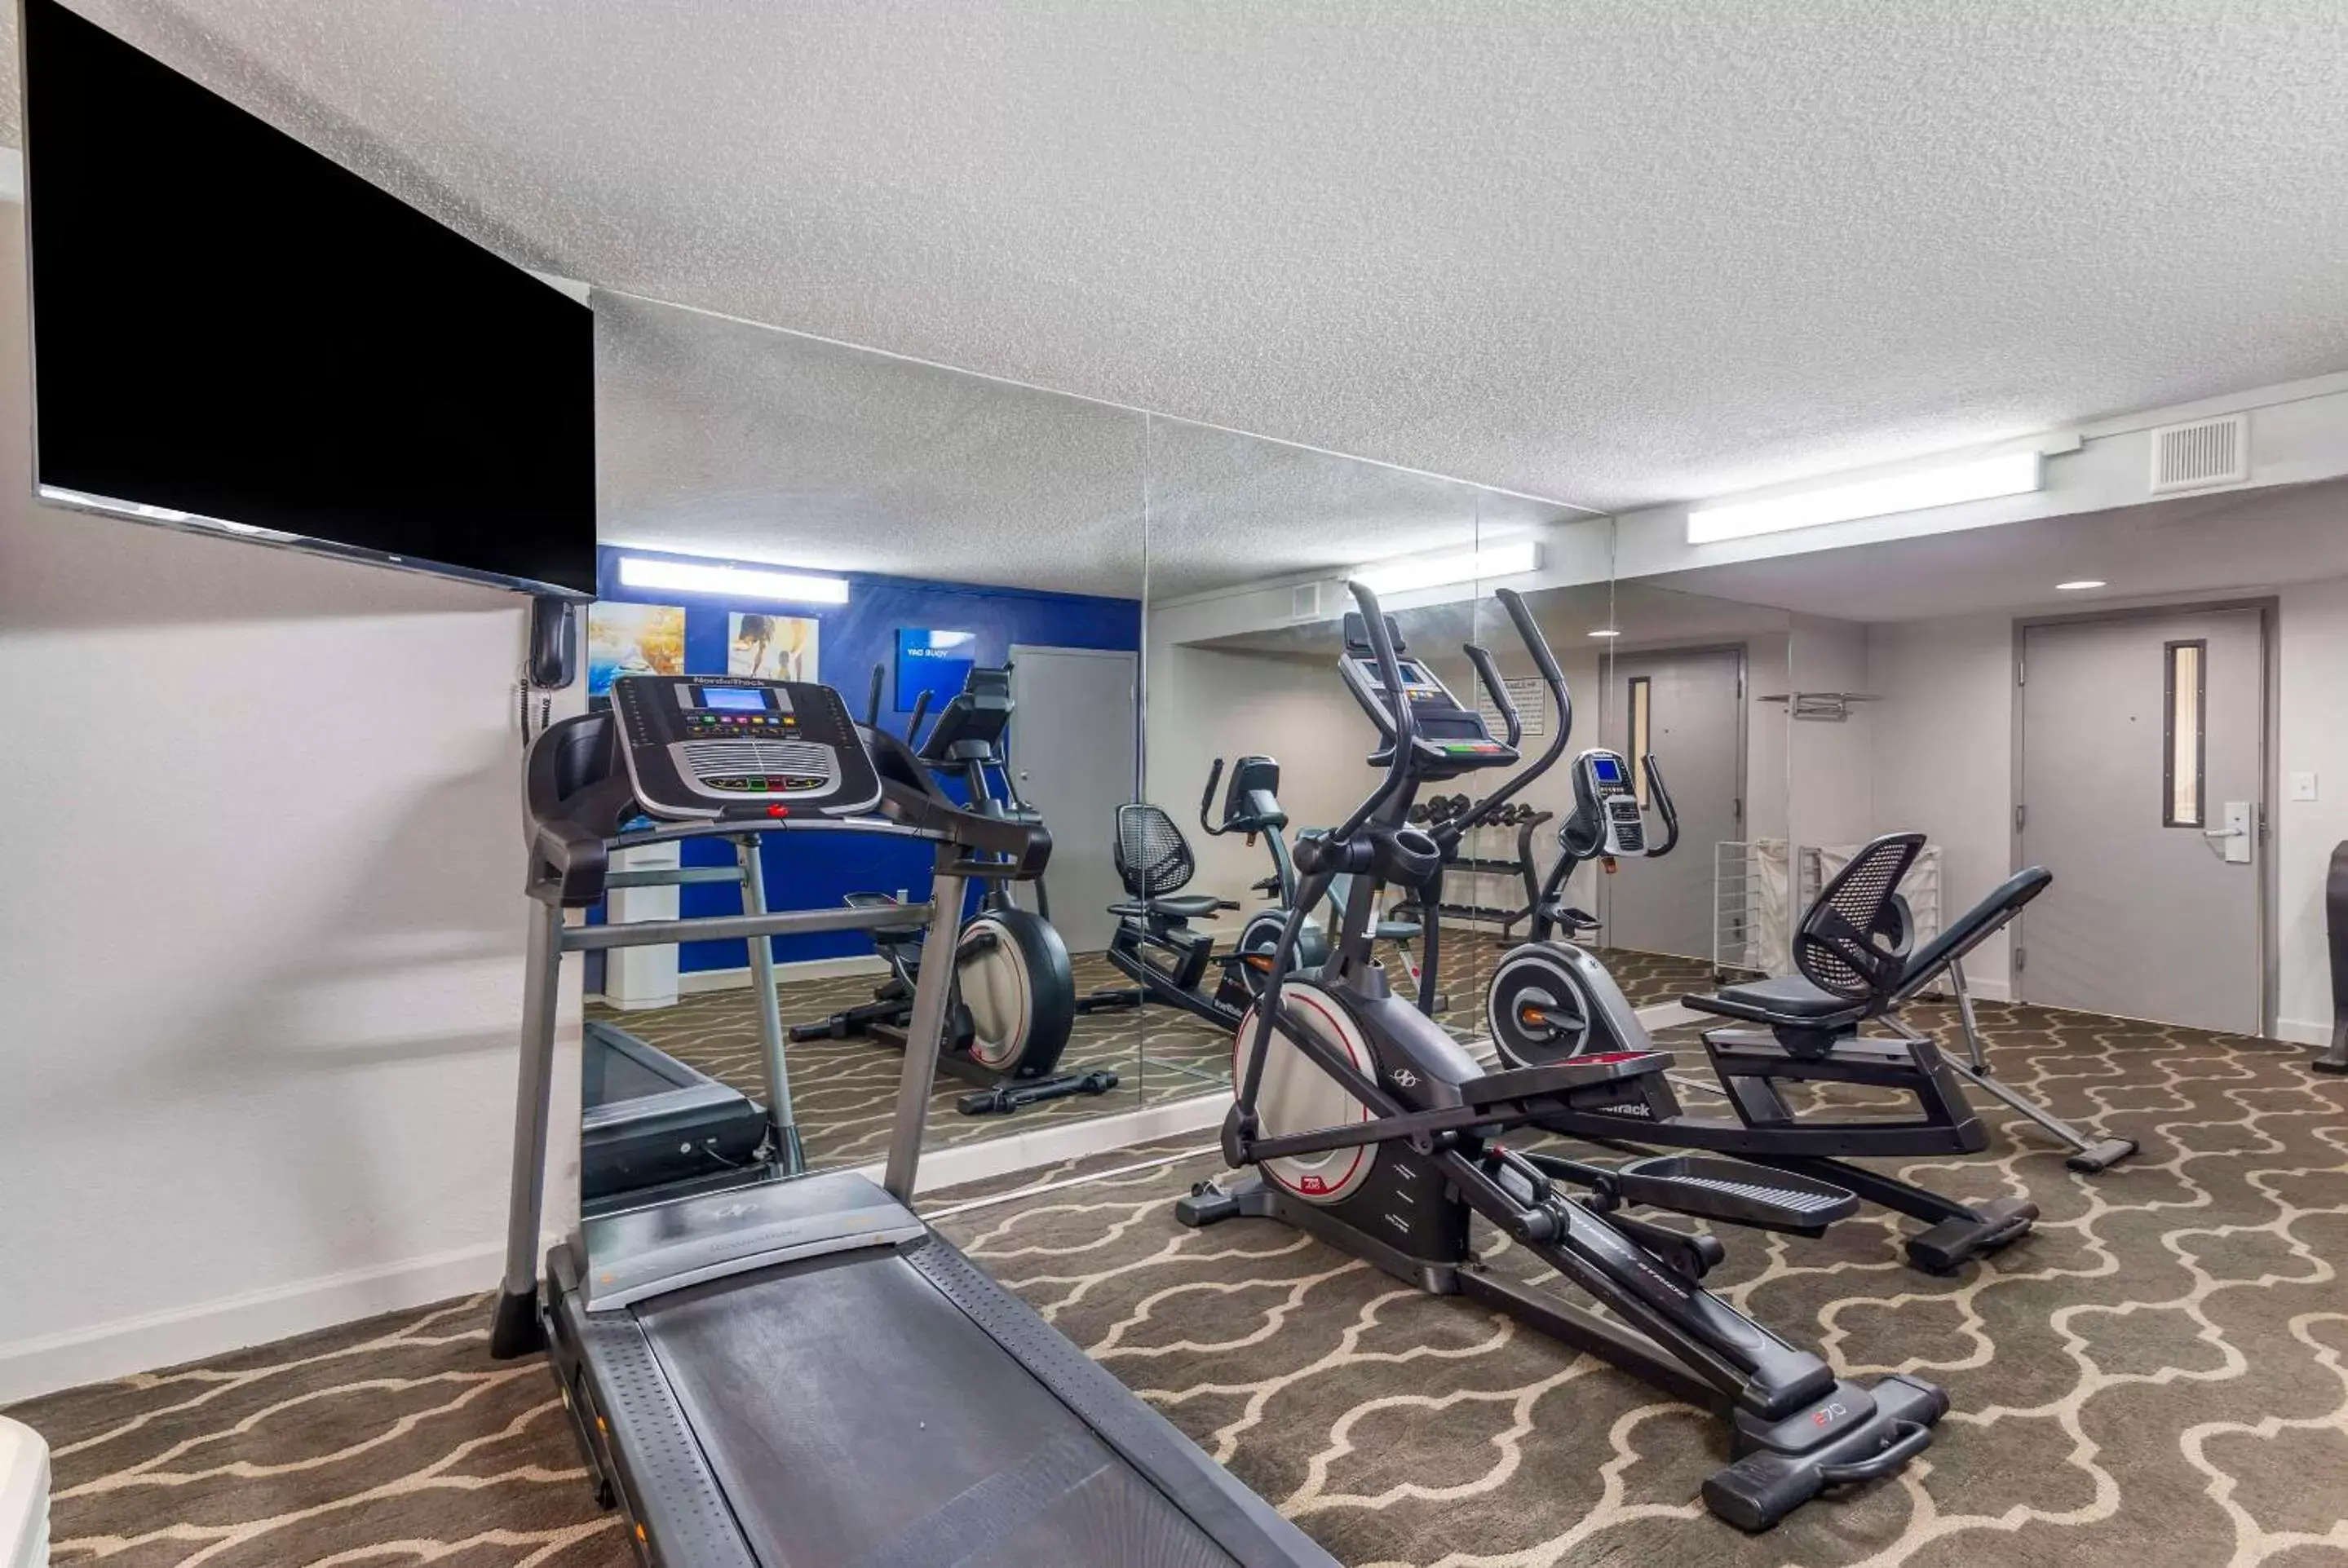 Fitness centre/facilities, Fitness Center/Facilities in Comfort Inn Alpharetta-Atlanta North